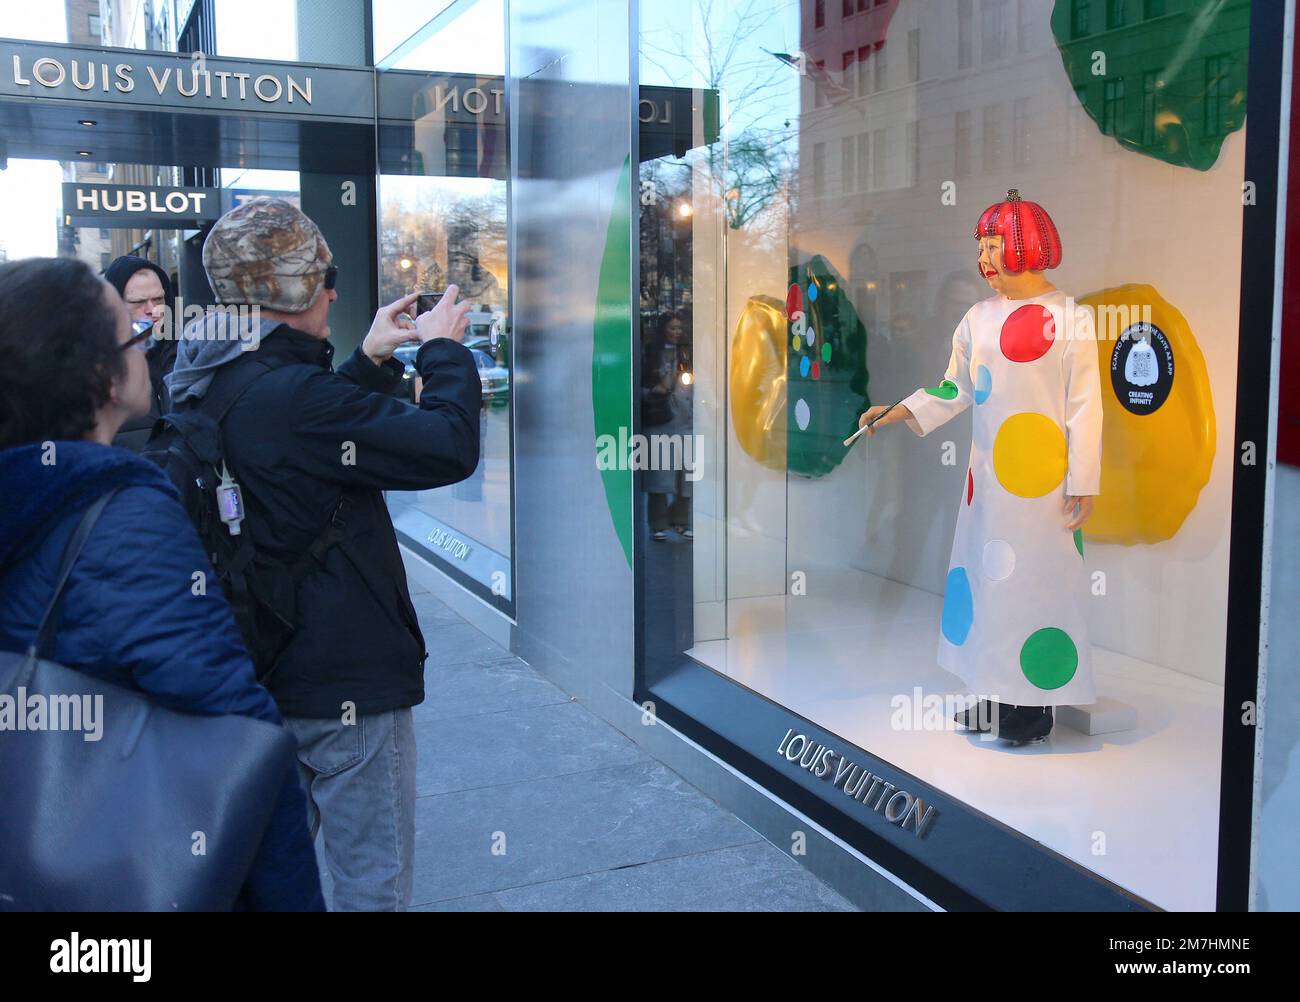 Japanese artist Yayoi Kusama robot displayed at Louis Vuitton